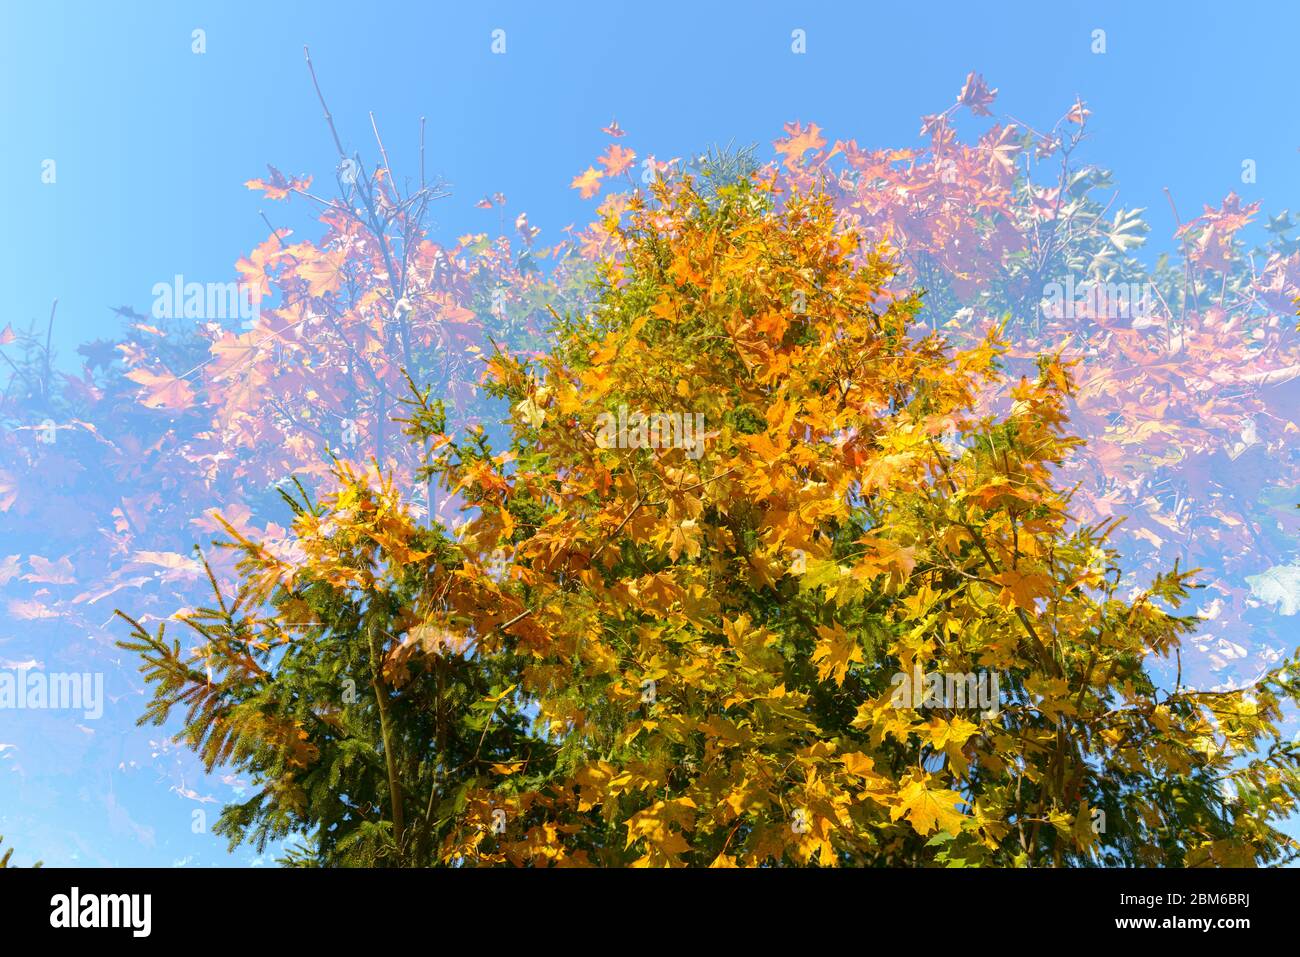 Doppelte Exposition von Herbstbäumen, die sich gegenseitig gegen blauen Himmel überlagern Stockfoto